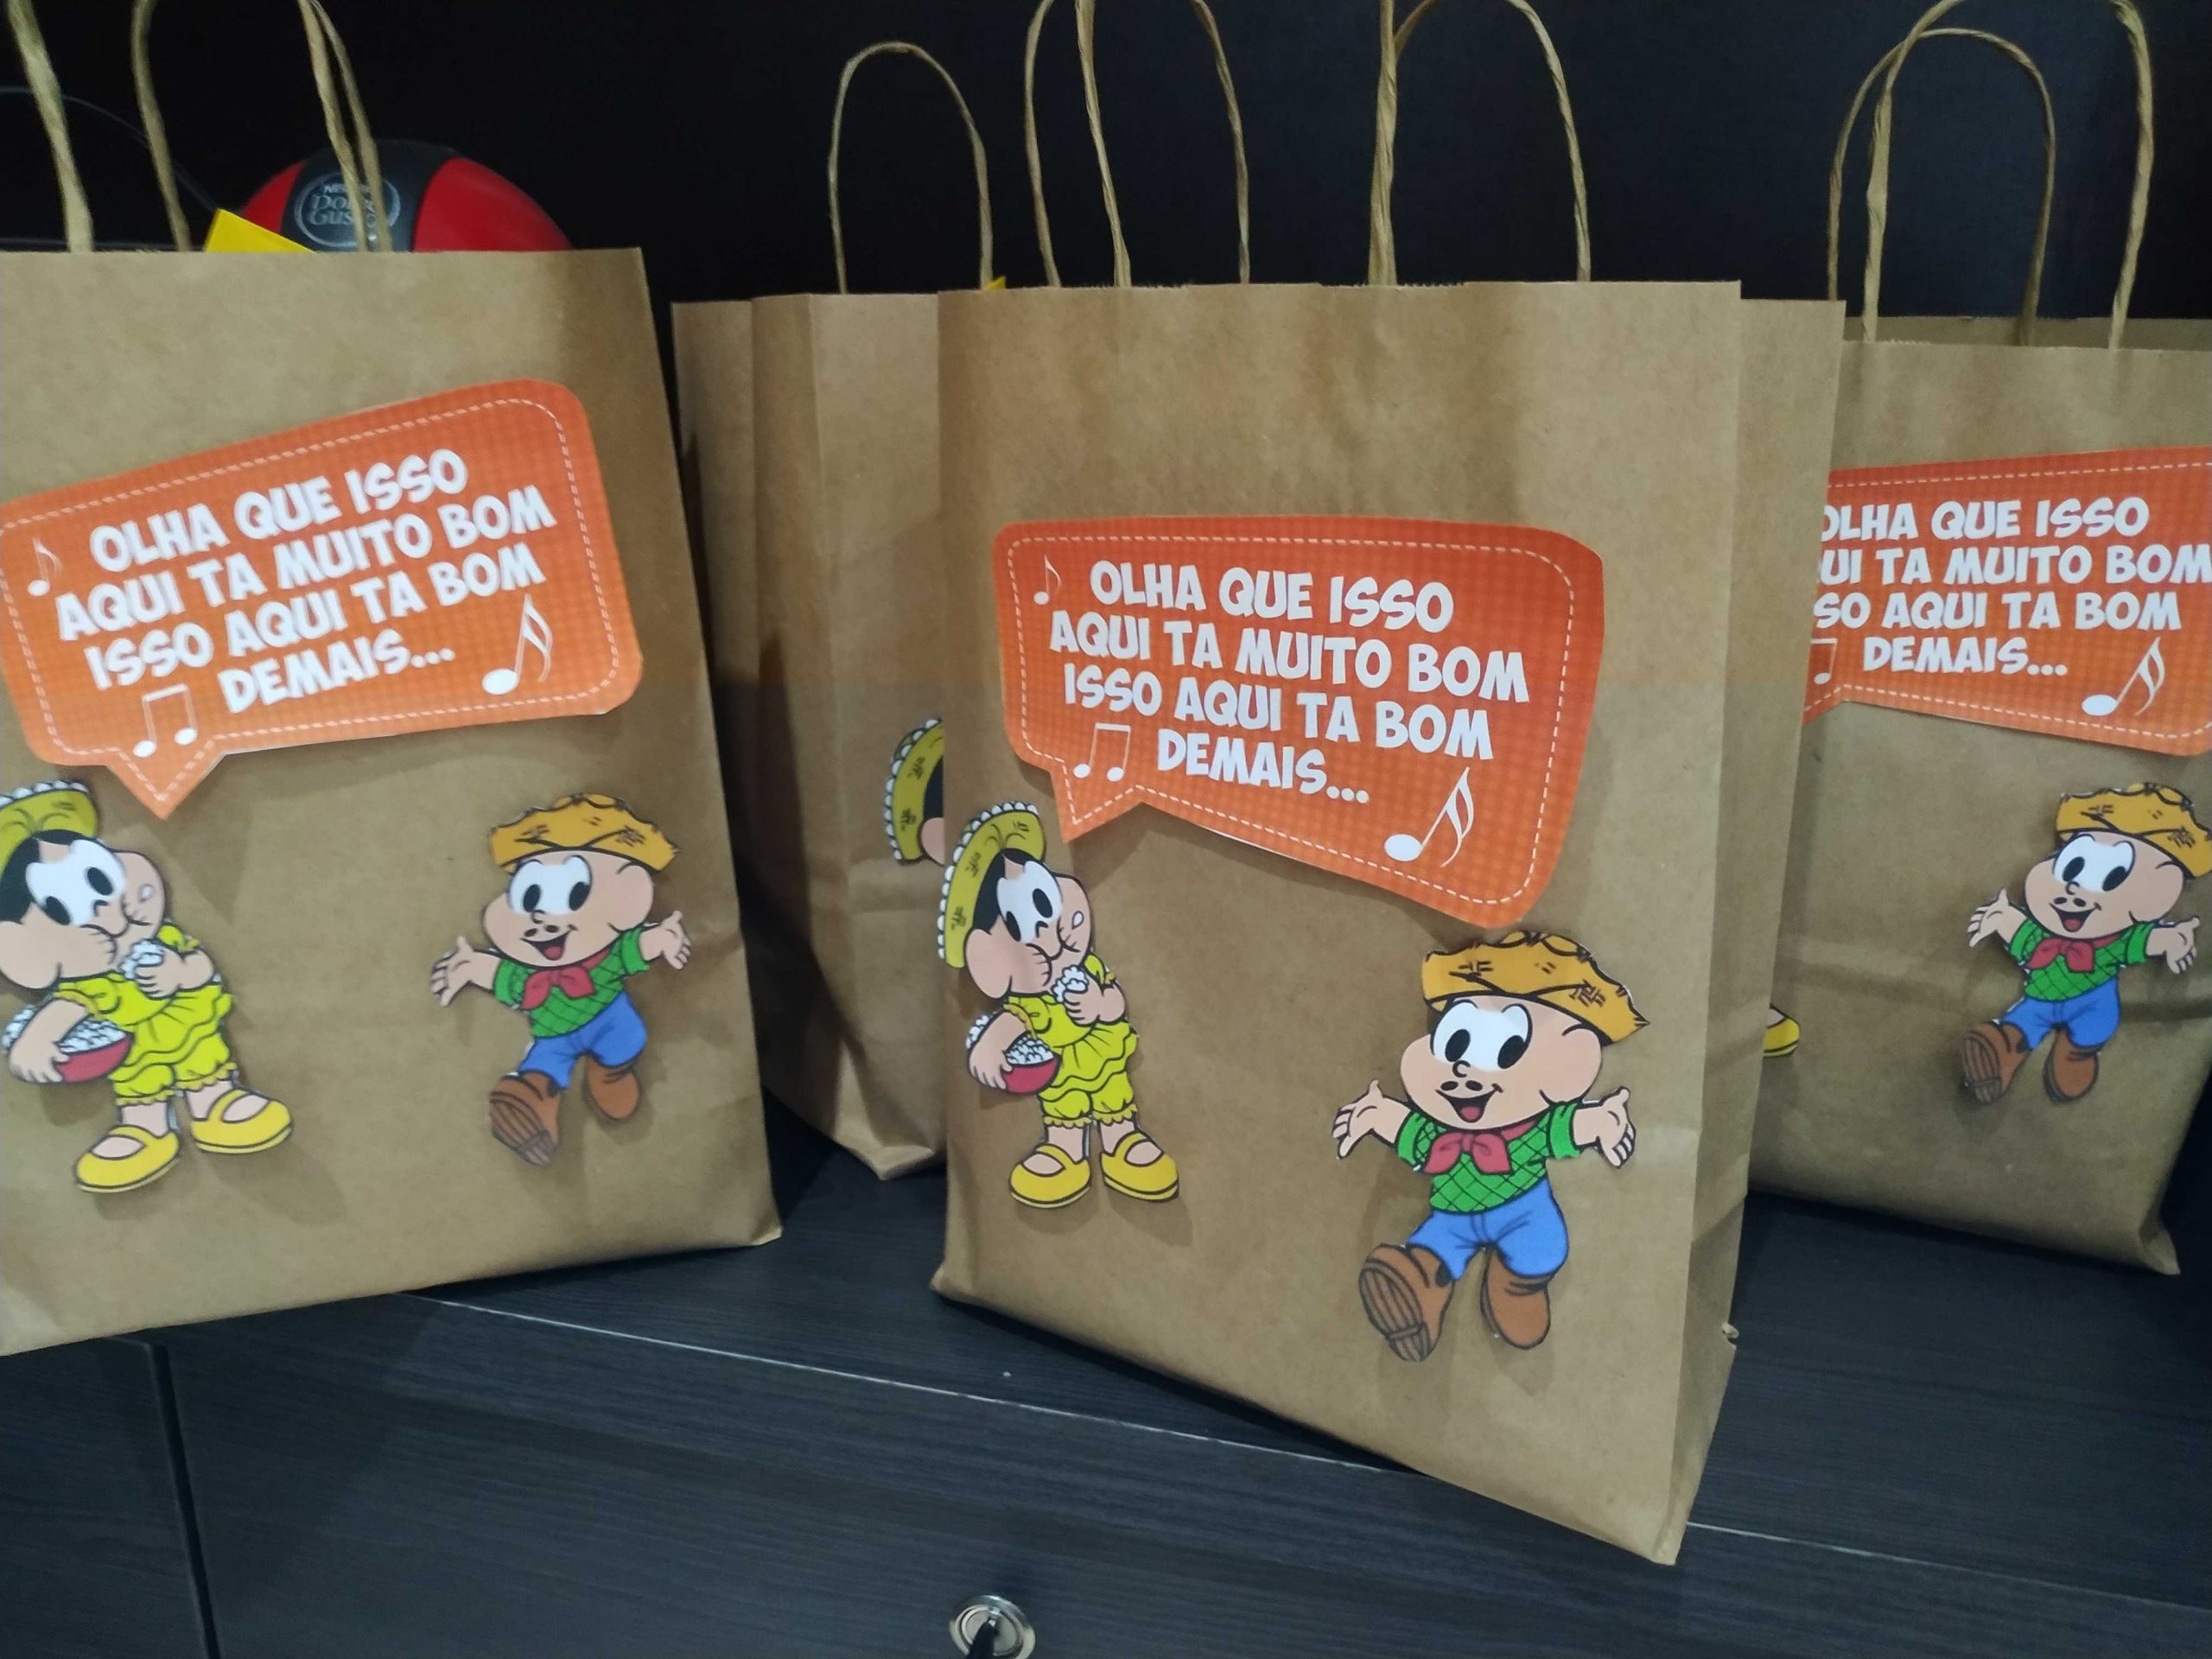  Sem arraial? Veja locais em Campinas que prepararam kits  para garantir as festas junina e julina em casa!